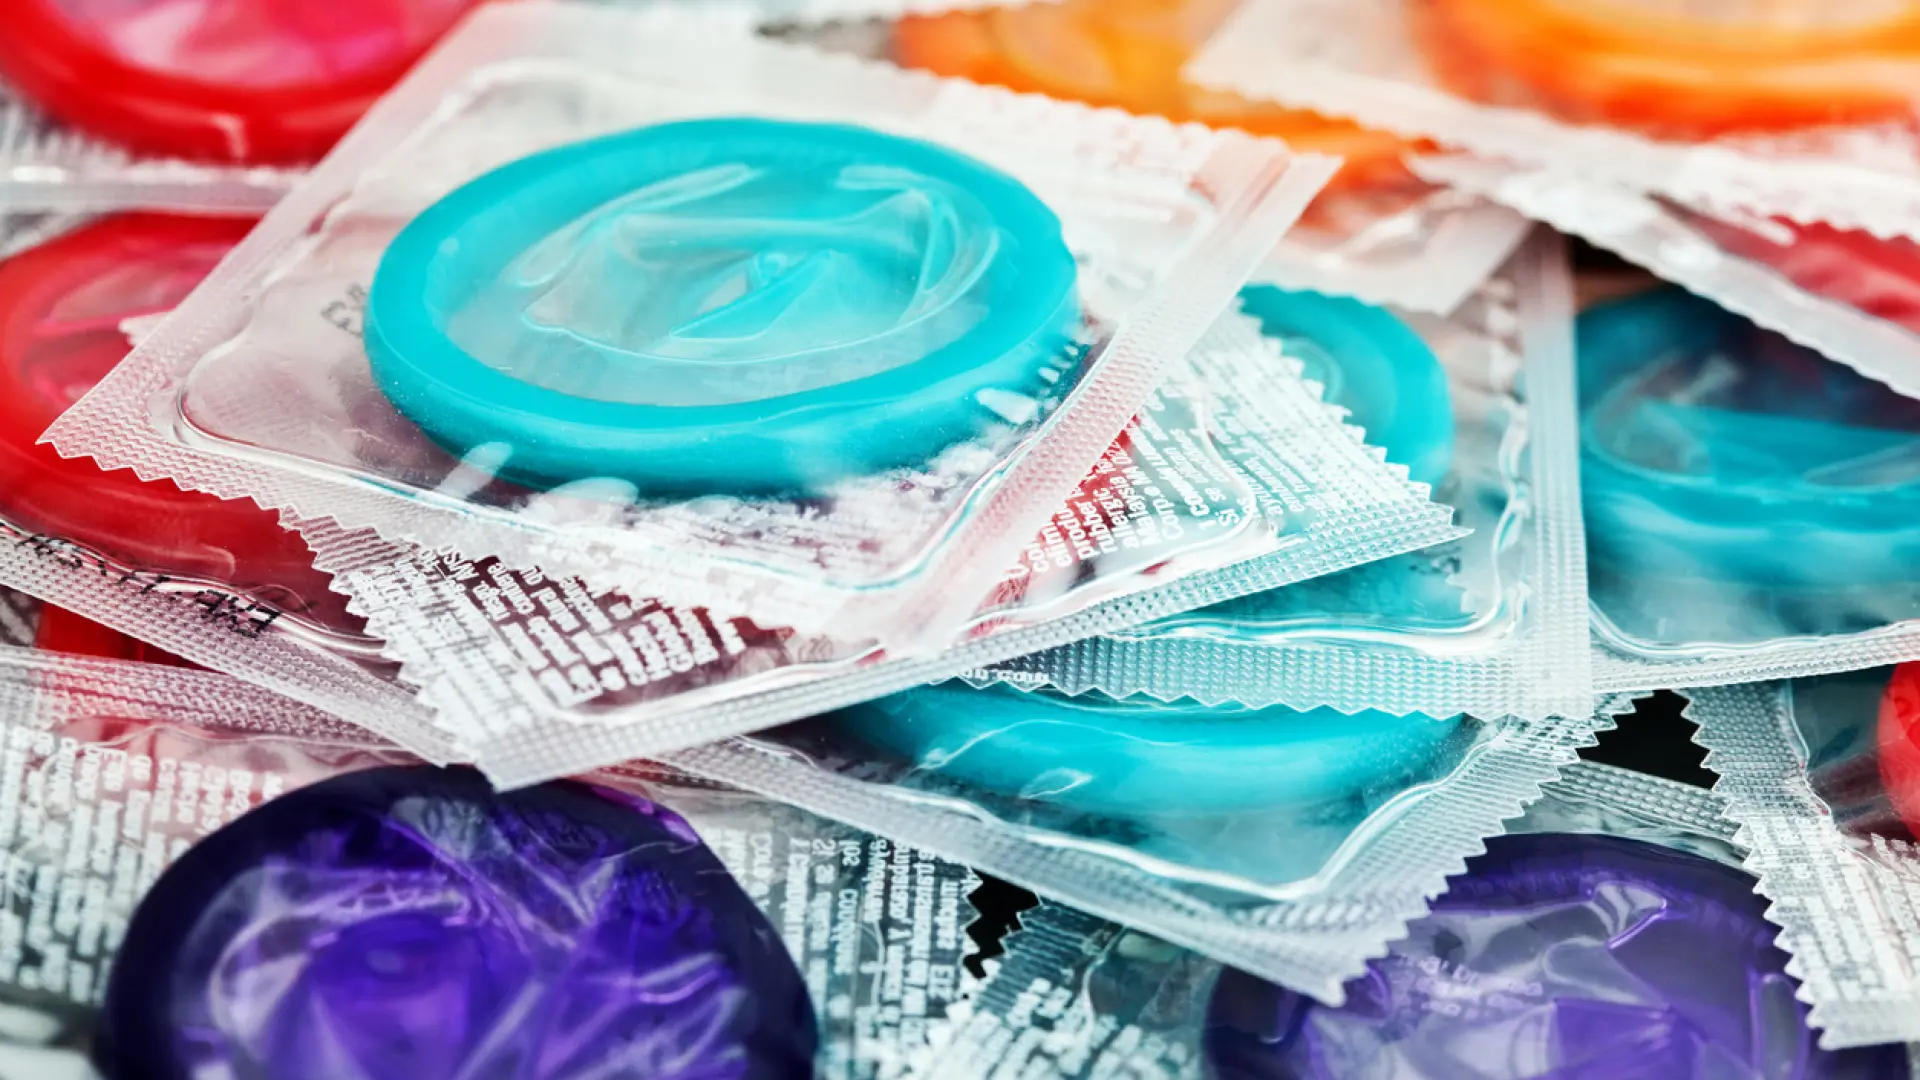 "No me cabe": mitos y dudas comunes sobre los condones masculinos